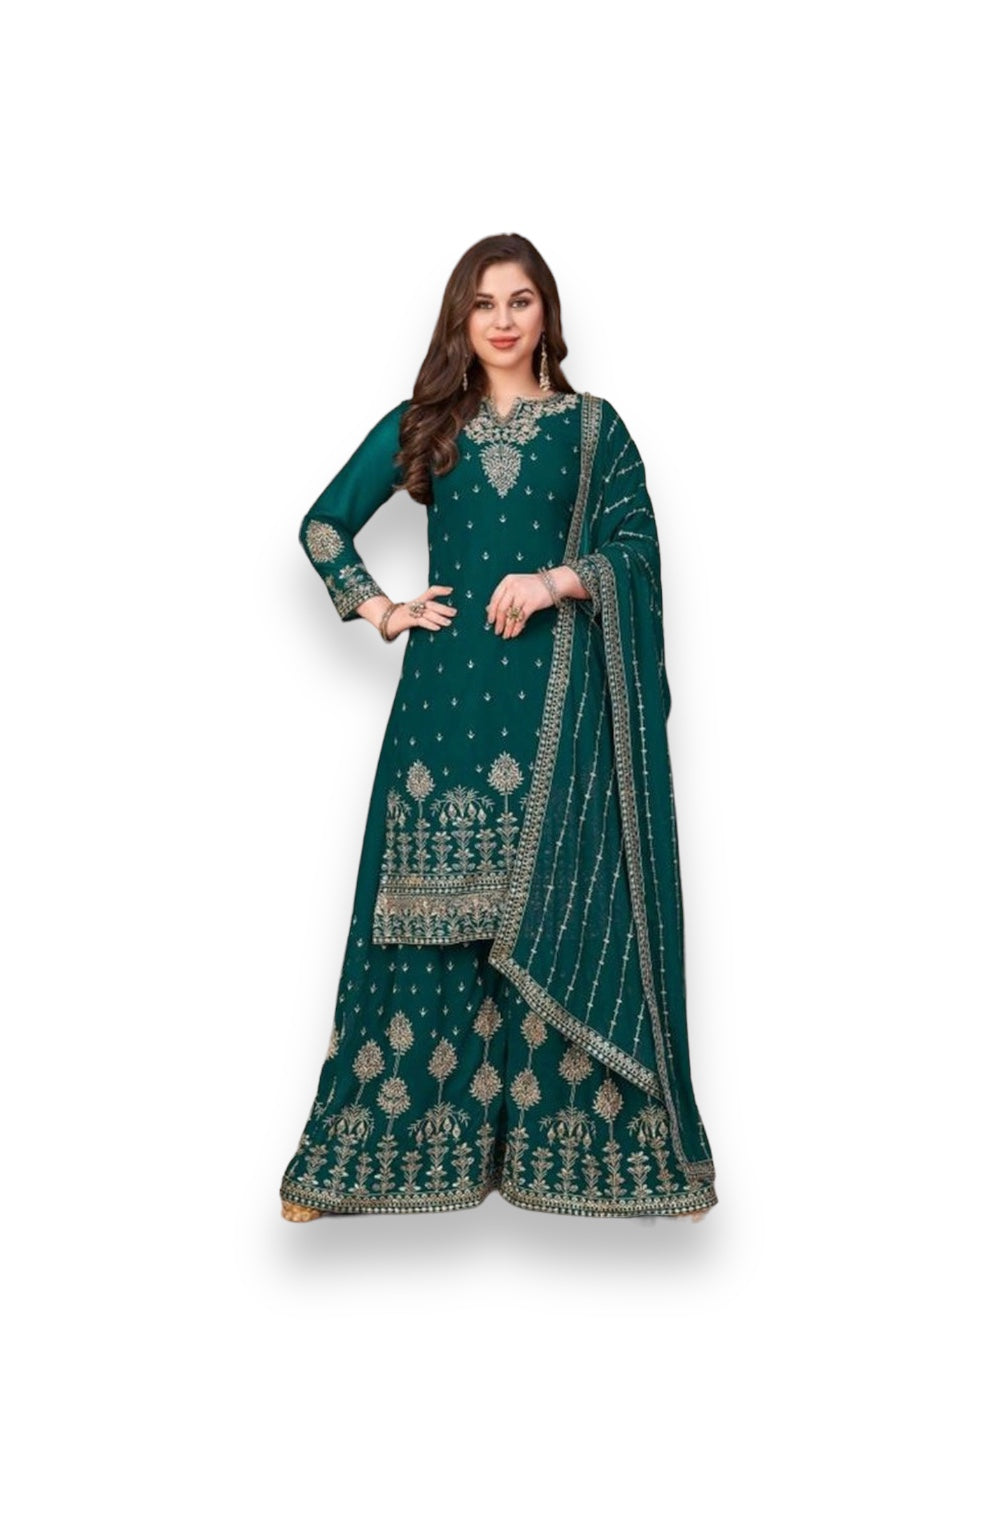 Splendid in Green: Festive Wear Georgette Heavy Designer Salwar Suit Collection